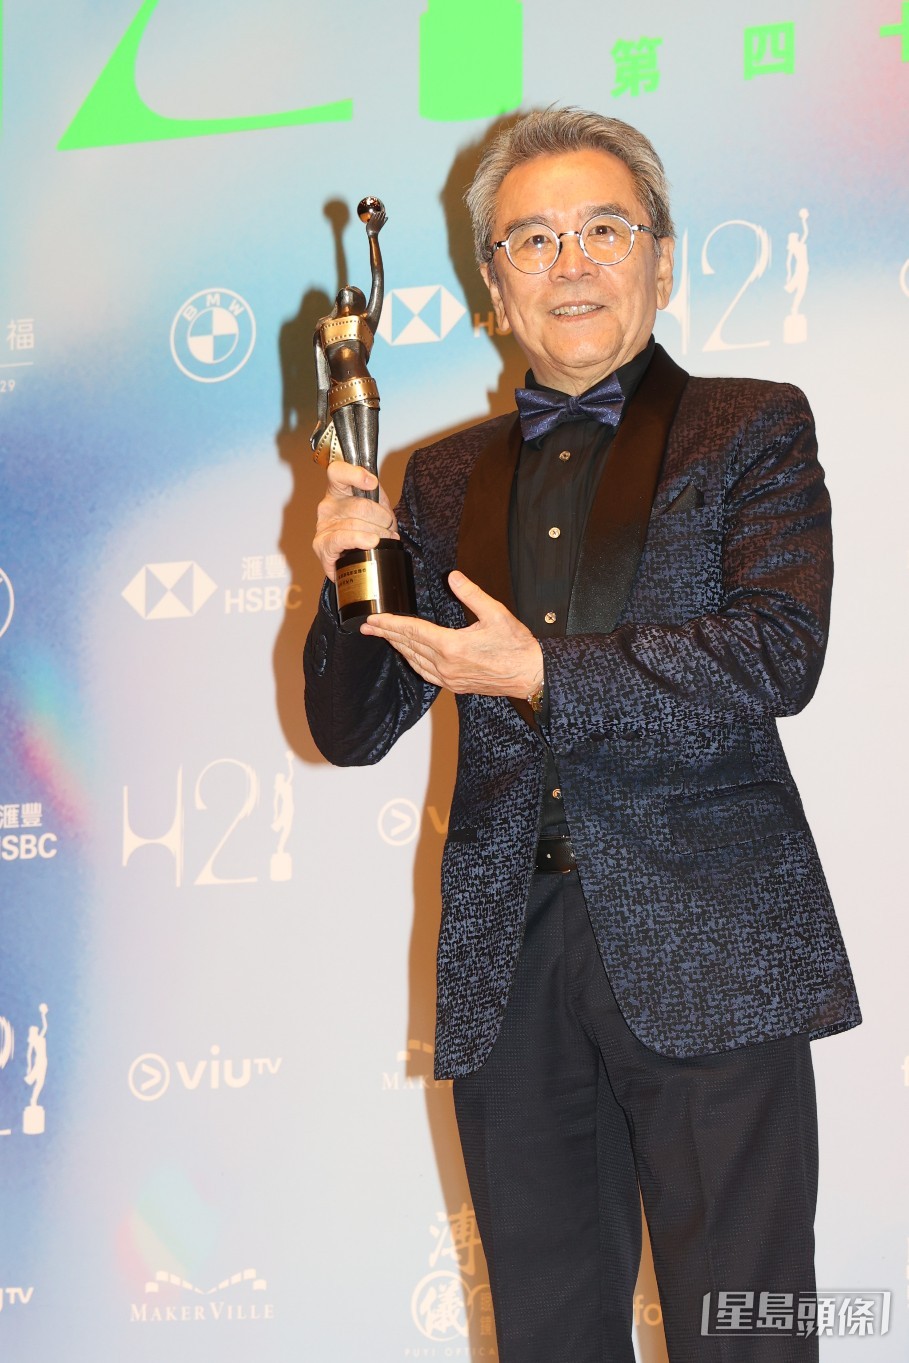 姜大衛事前沒想過自己得獎，也很喜歡其他演員，希望黃梓樂、吳慷仁、謝君豪得奬。